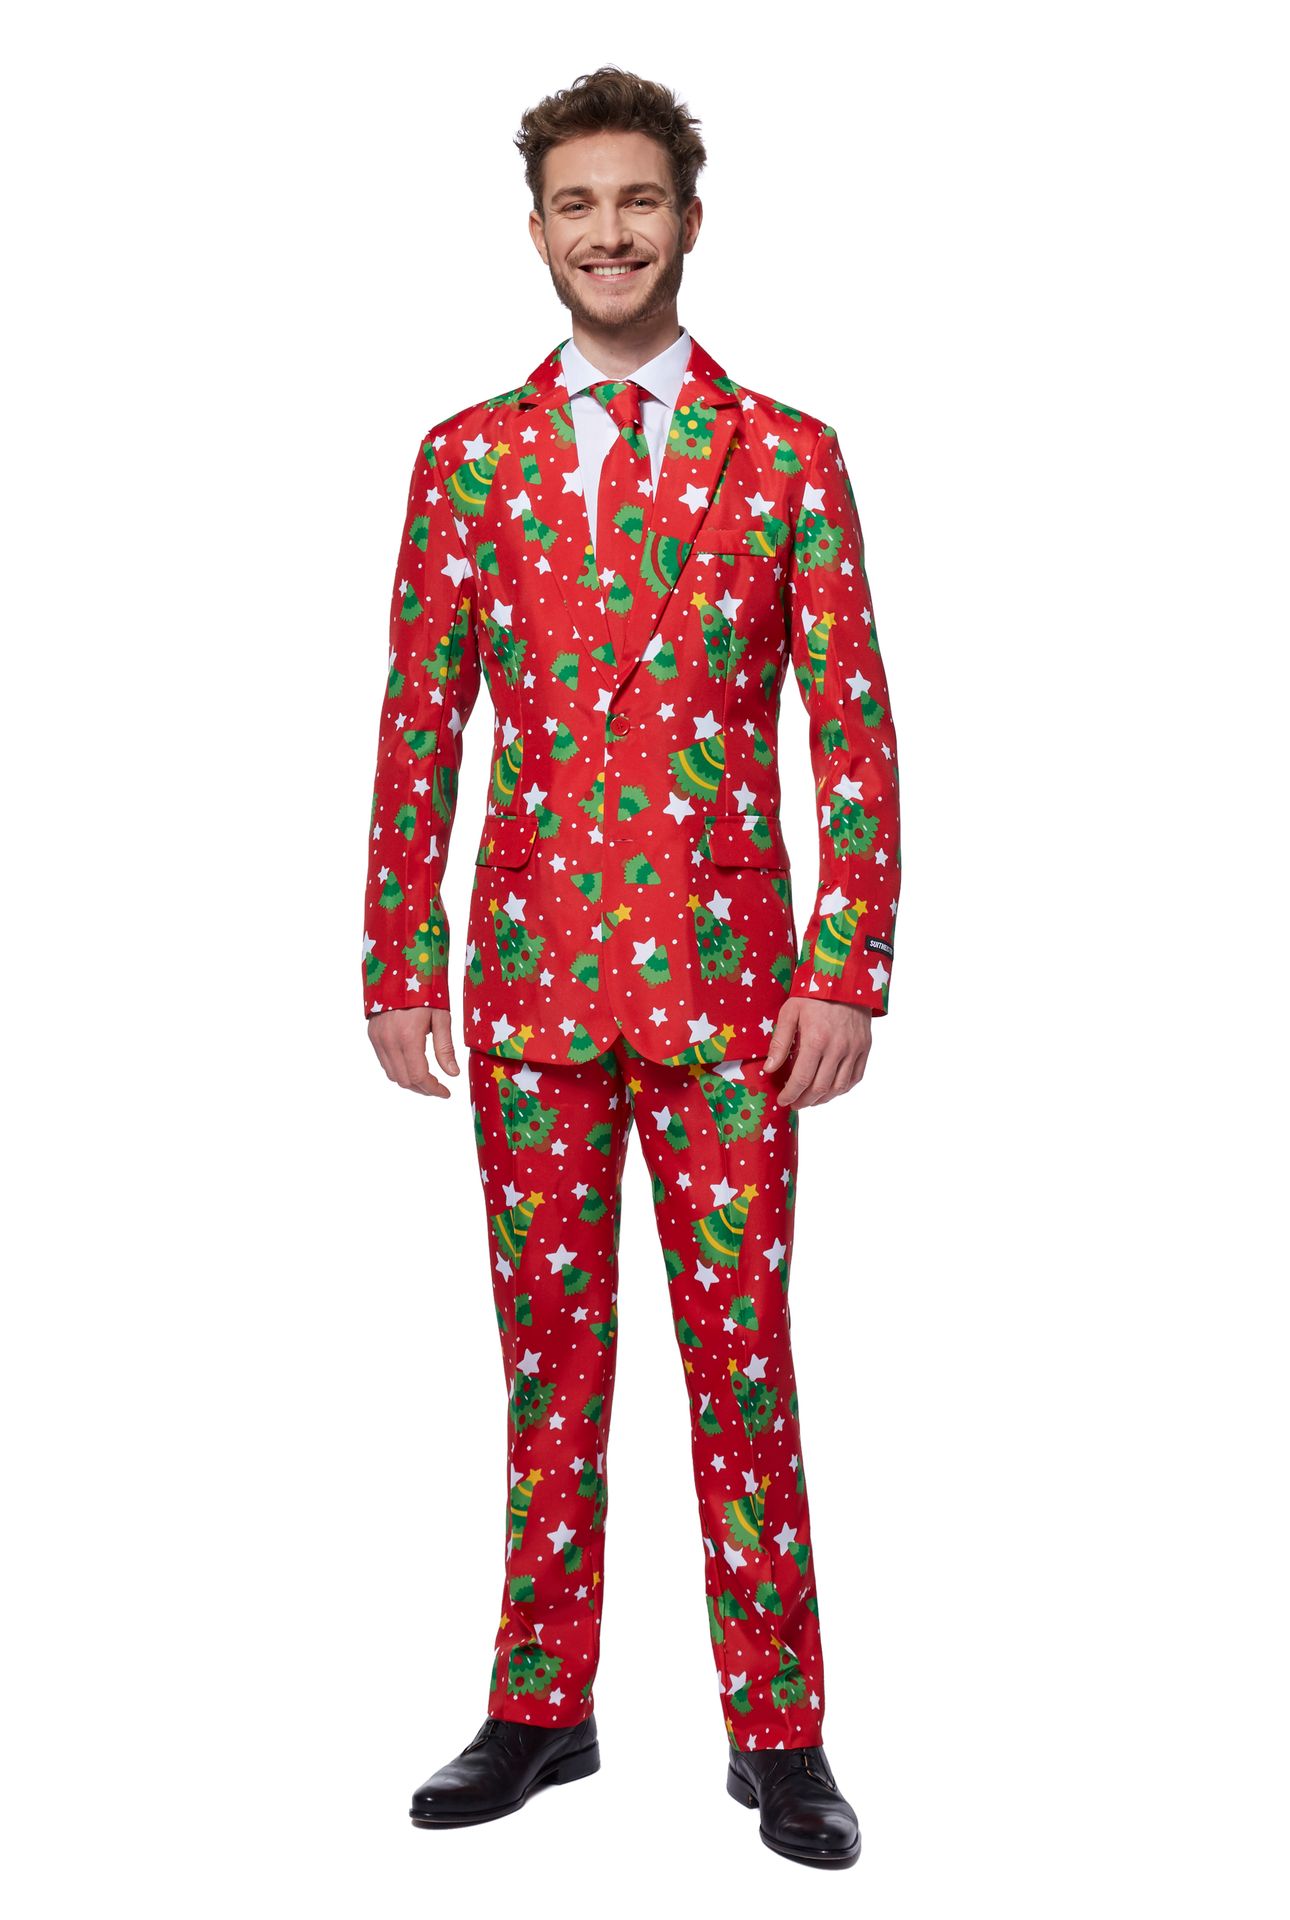 rechtbank Alsjeblieft kijk Specialiseren Rode kerst sterren Suitmeister kostuum